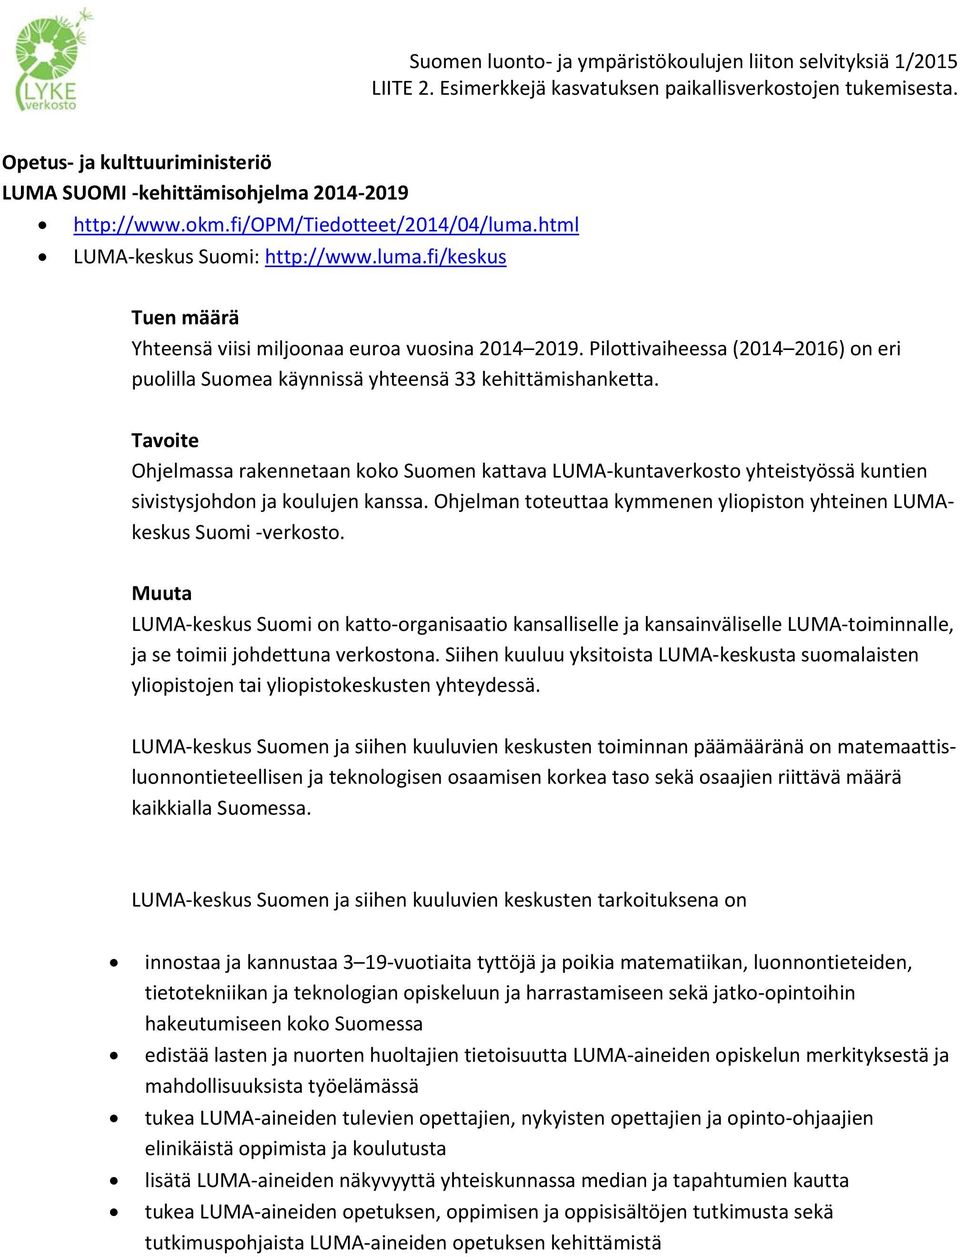 Tavoite Ohjelmassa rakennetaan koko Suomen kattava LUMA kuntaverkosto yhteistyössä kuntien sivistysjohdon ja koulujen kanssa. Ohjelman toteuttaa kymmenen yliopiston yhteinen LUMAkeskus Suomi verkosto.